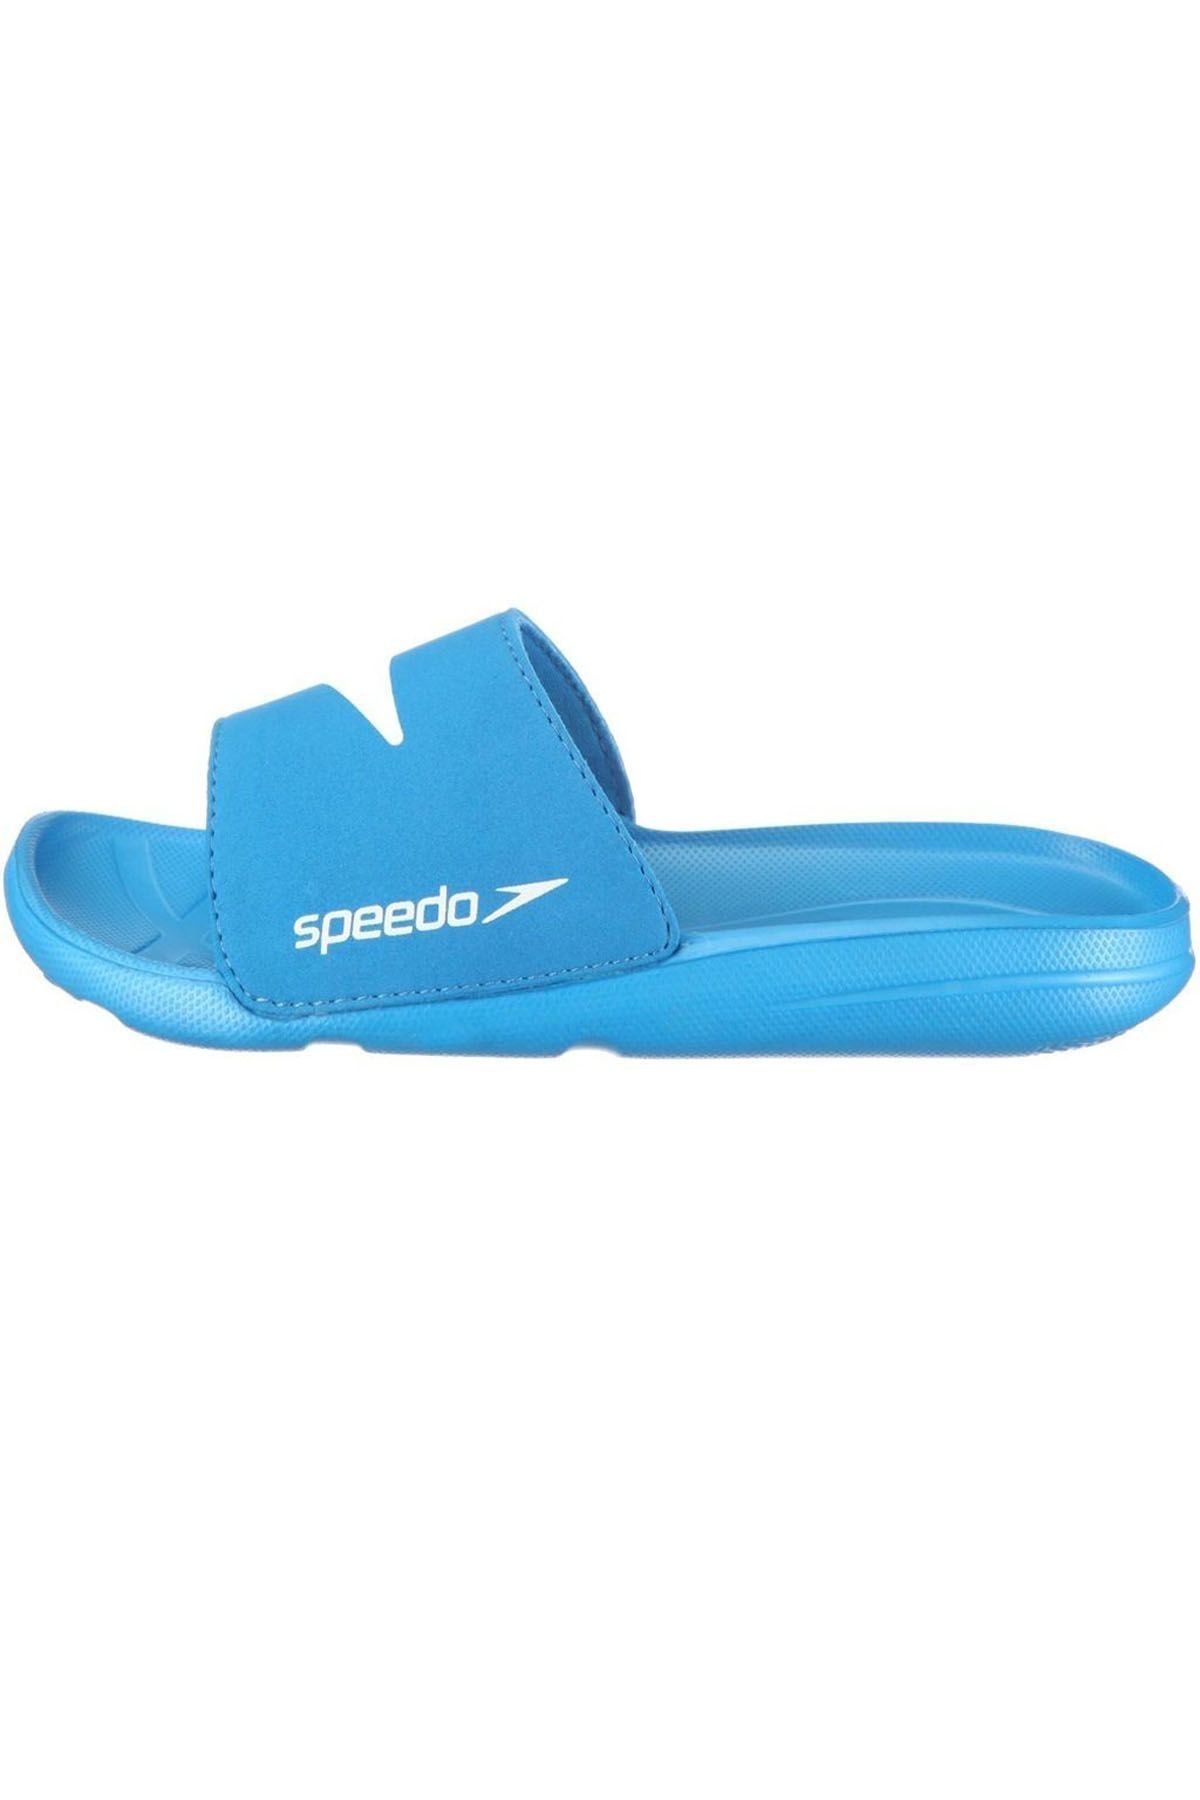 SPEEDO Speedo Atami Core Bayan Terlik - Mavi/Beyaz 8-073993082